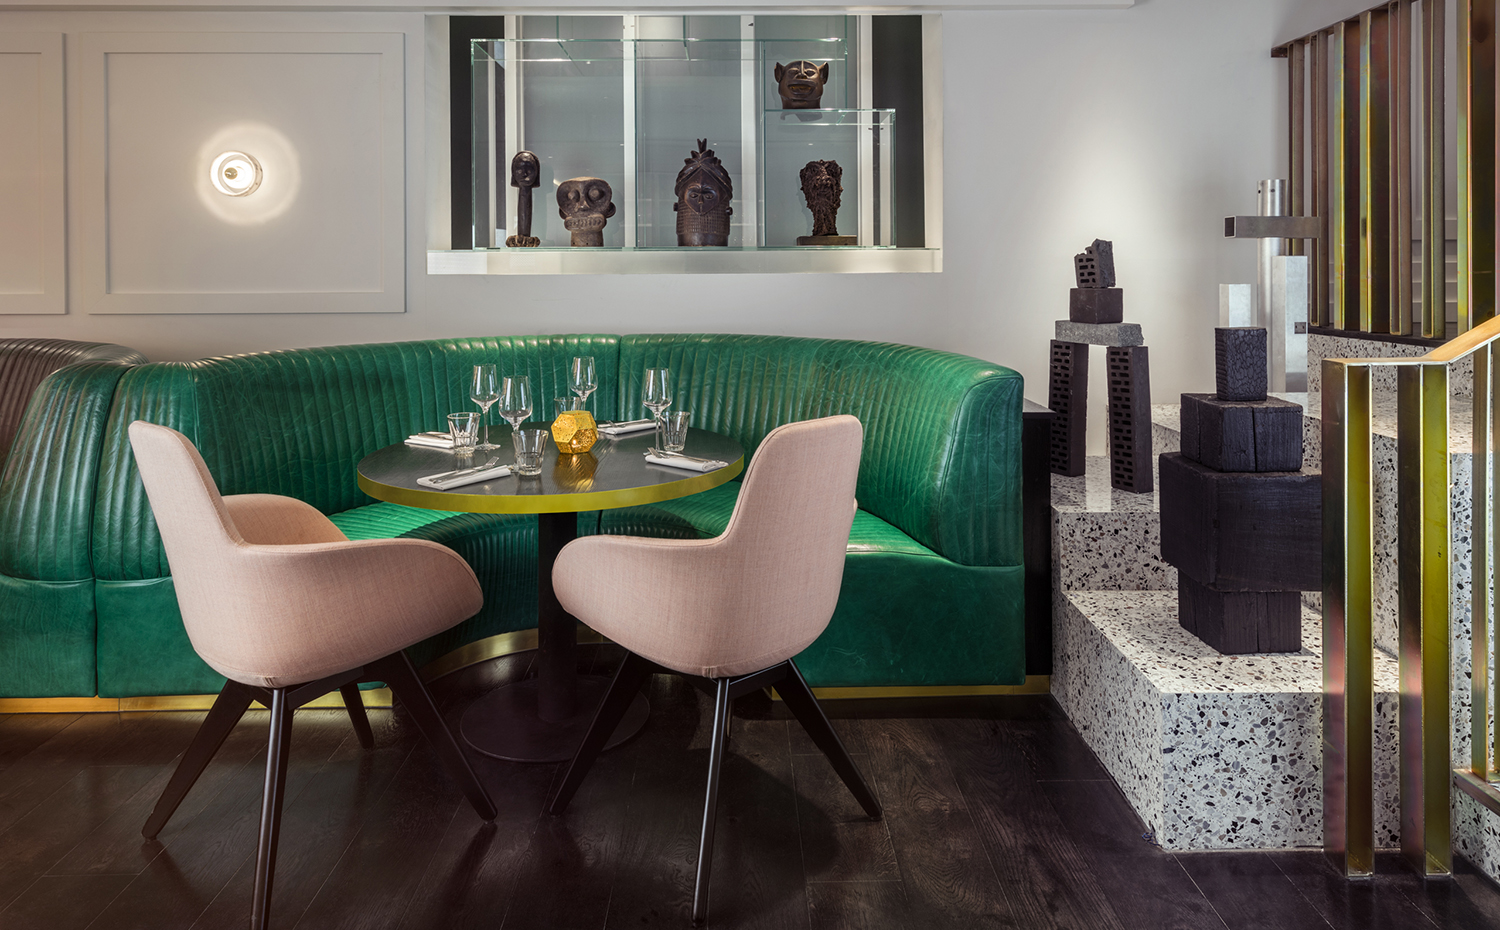 El restaurante Bronte, en Londres, sabe mucho de diseño. Sus sofás semicirculares son la clave de su decoración